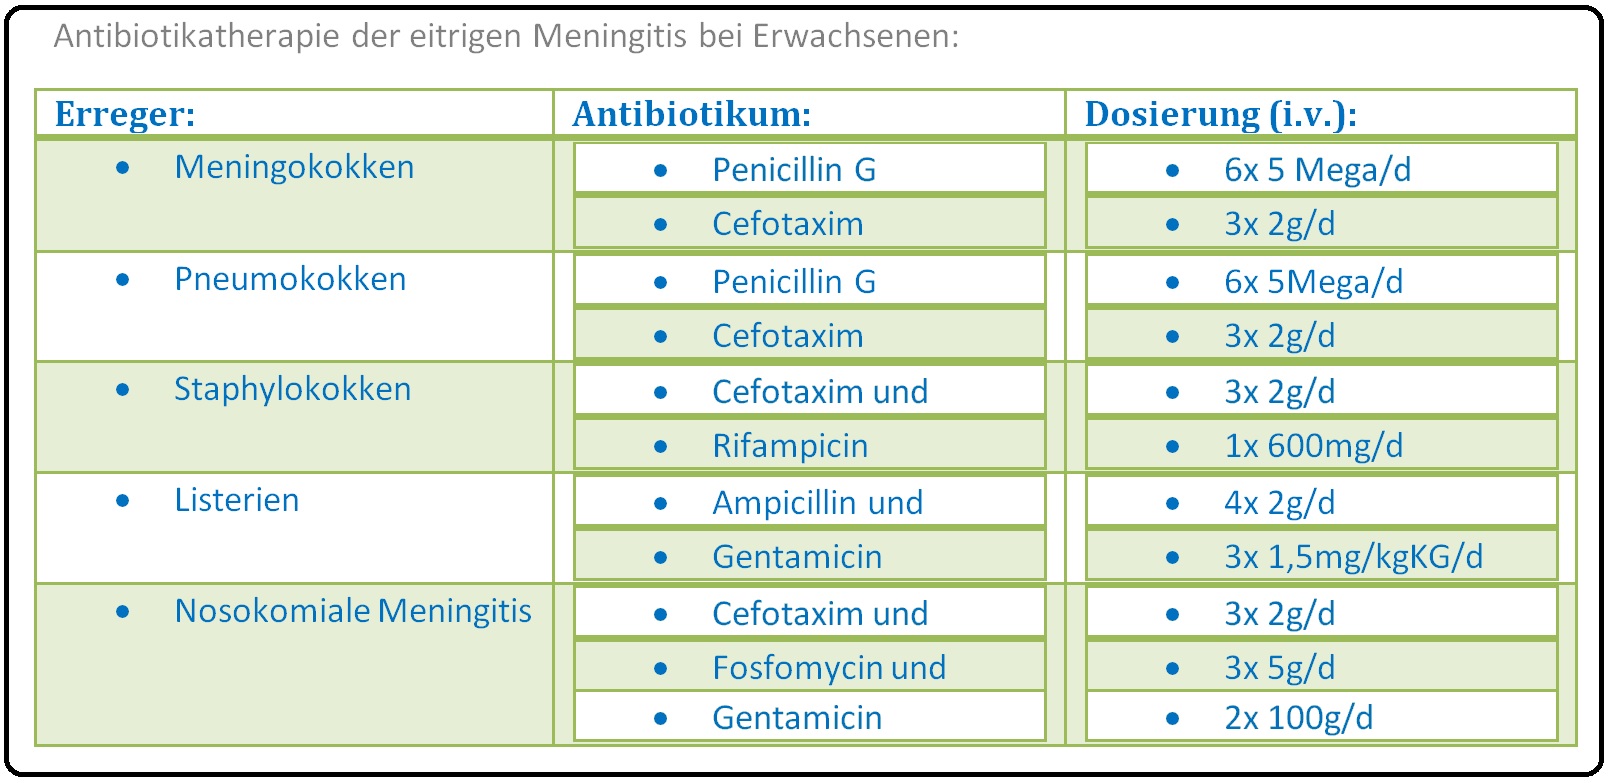 030 Anitbiotikatherapie der eitrigen Meningitis bei Erwachsenen